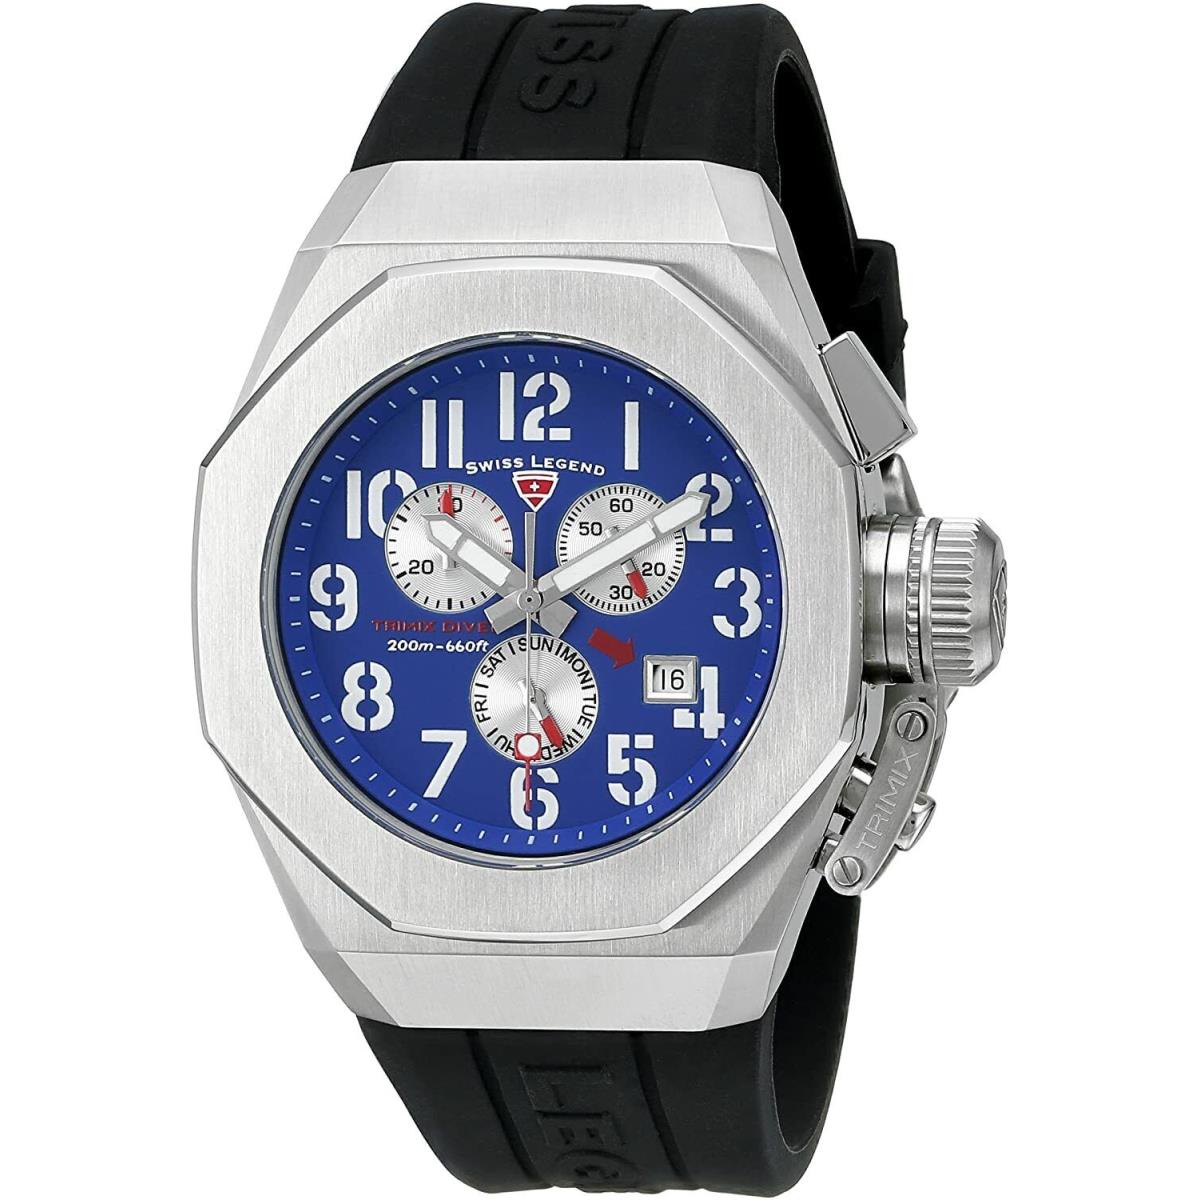 Swiss Legend 10542-03 Trimix Diver Chronograph Watch Silver Blue Quartz Men`s - Blue Dial, Black Band, Silver Bezel